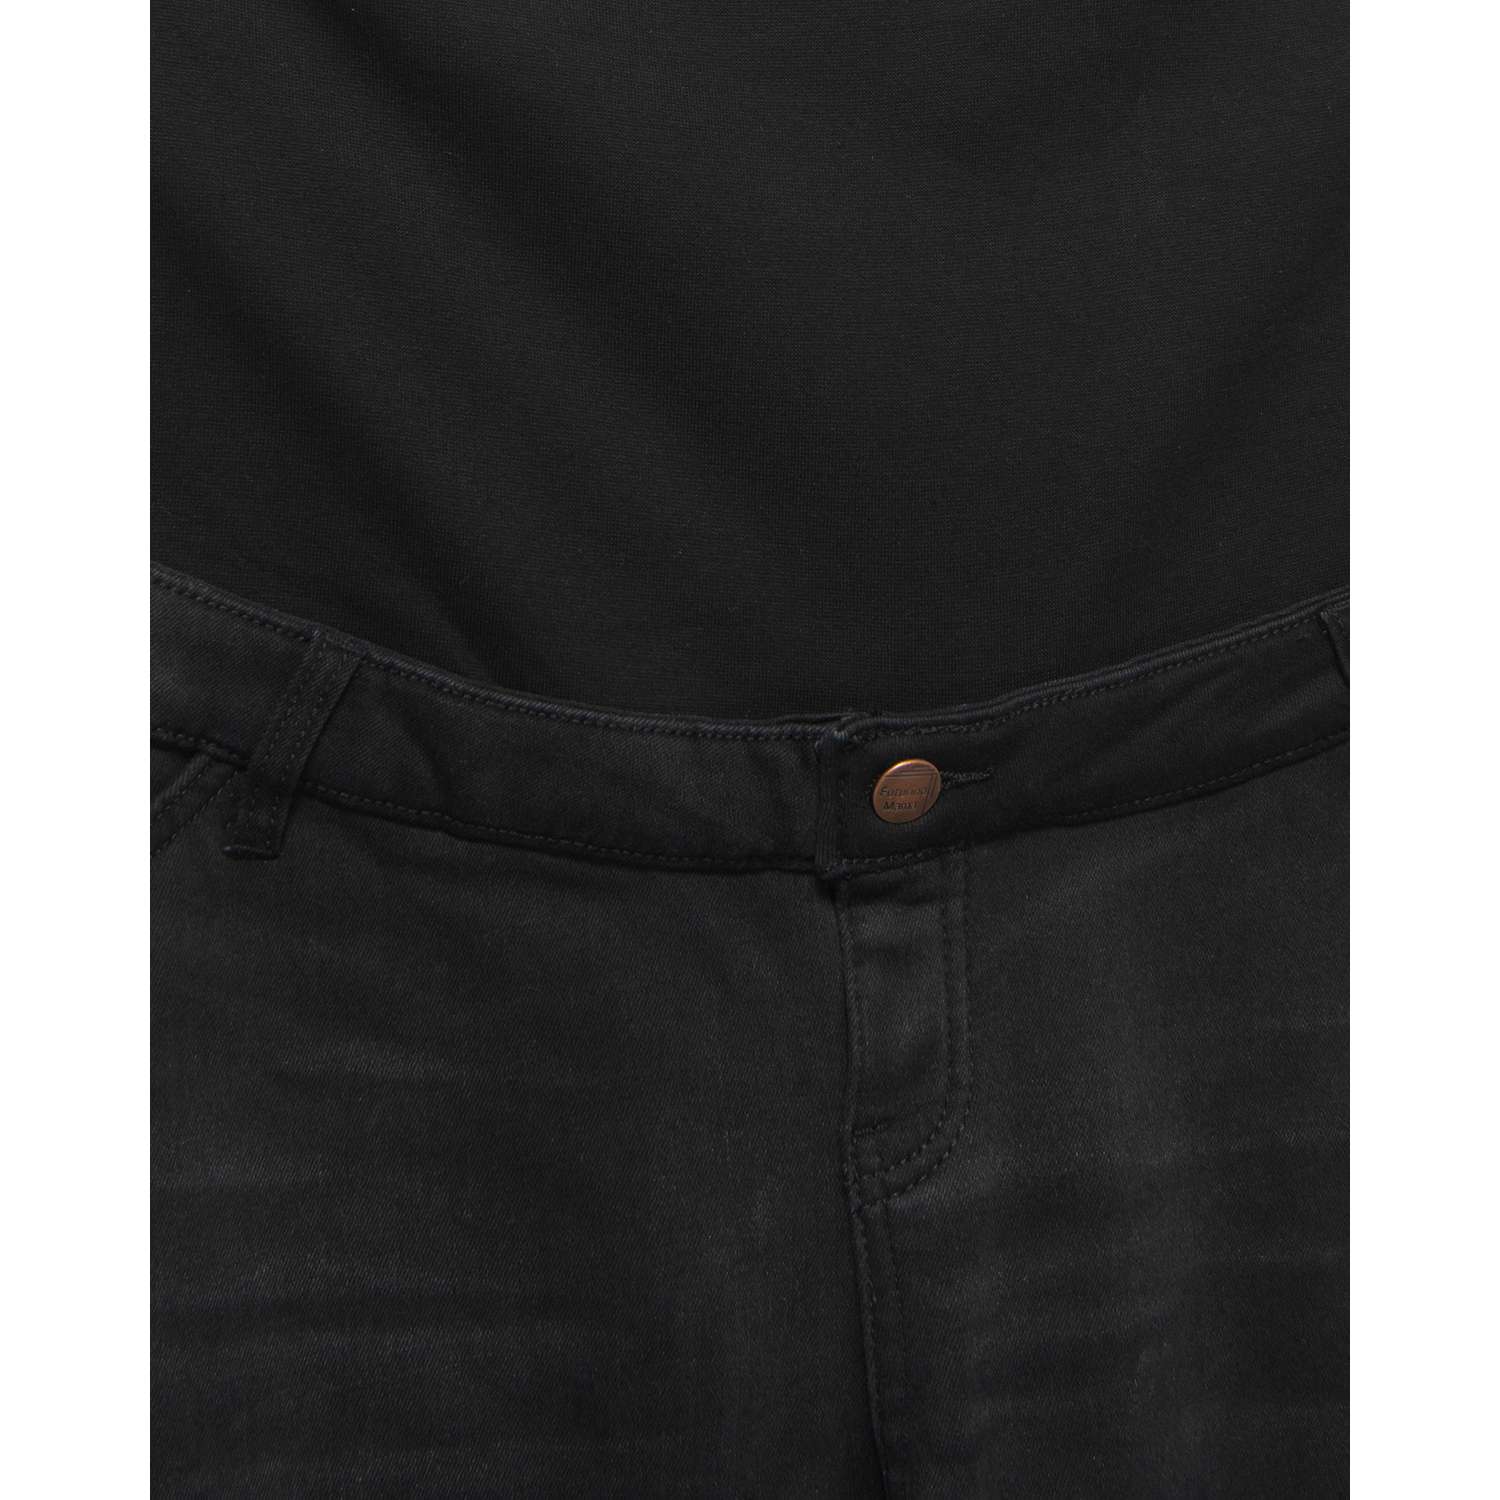 Утеплённые джинсы для беременных Futurino Mama W23FM6-61-mat-99 - фото 4